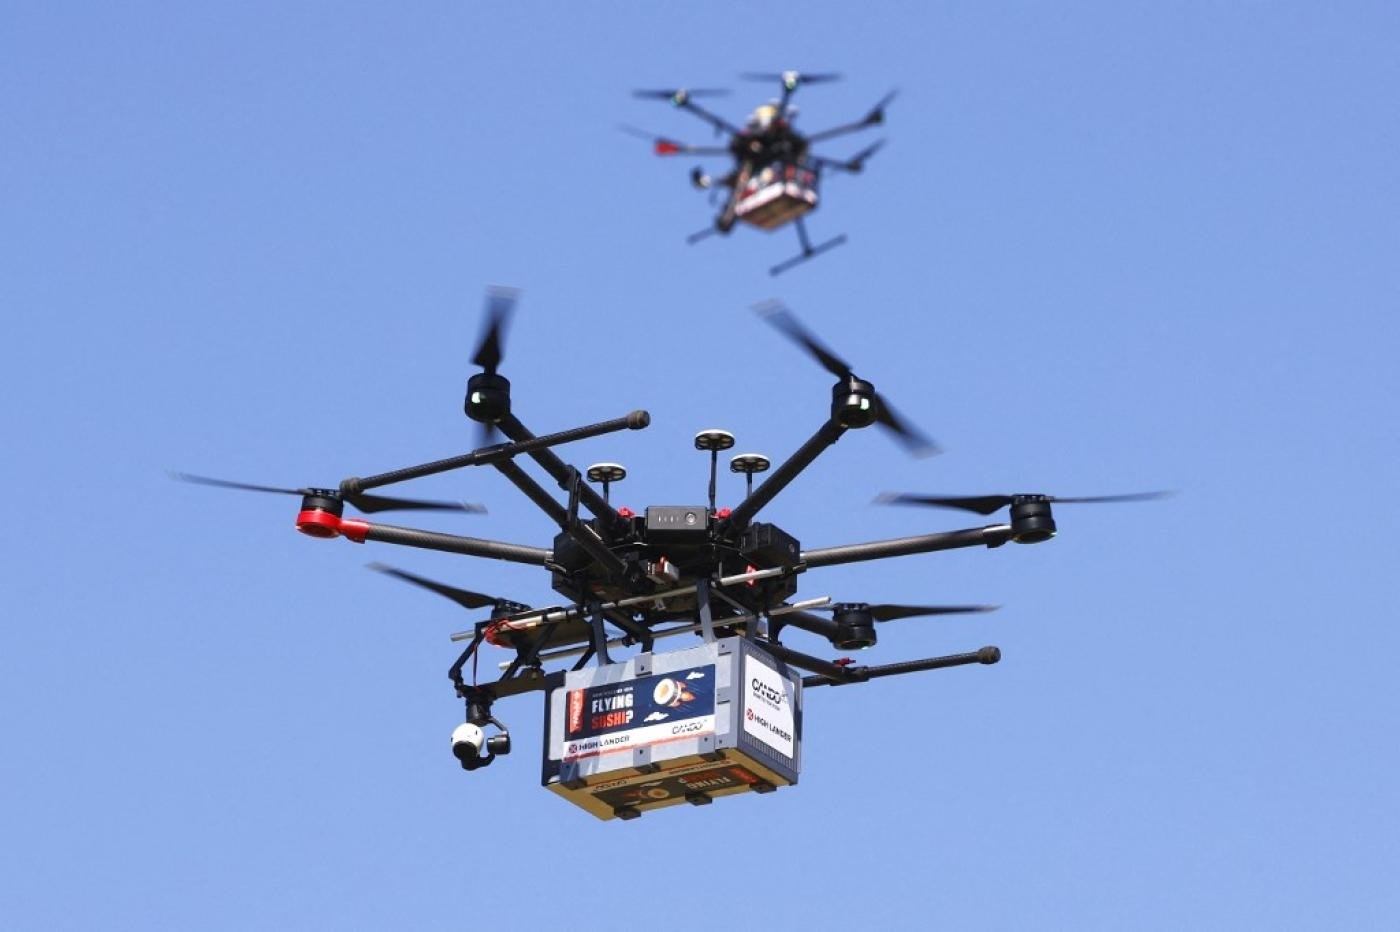 Des drones effectuent des livraisons de fast-food lors d’un événement presse dans la ville israélienne de Herzliya, le 11 octobre 2021. Les drones commerciaux sont de plus en plus utilisés comme armes par des acteurs non étatiques (AFP)